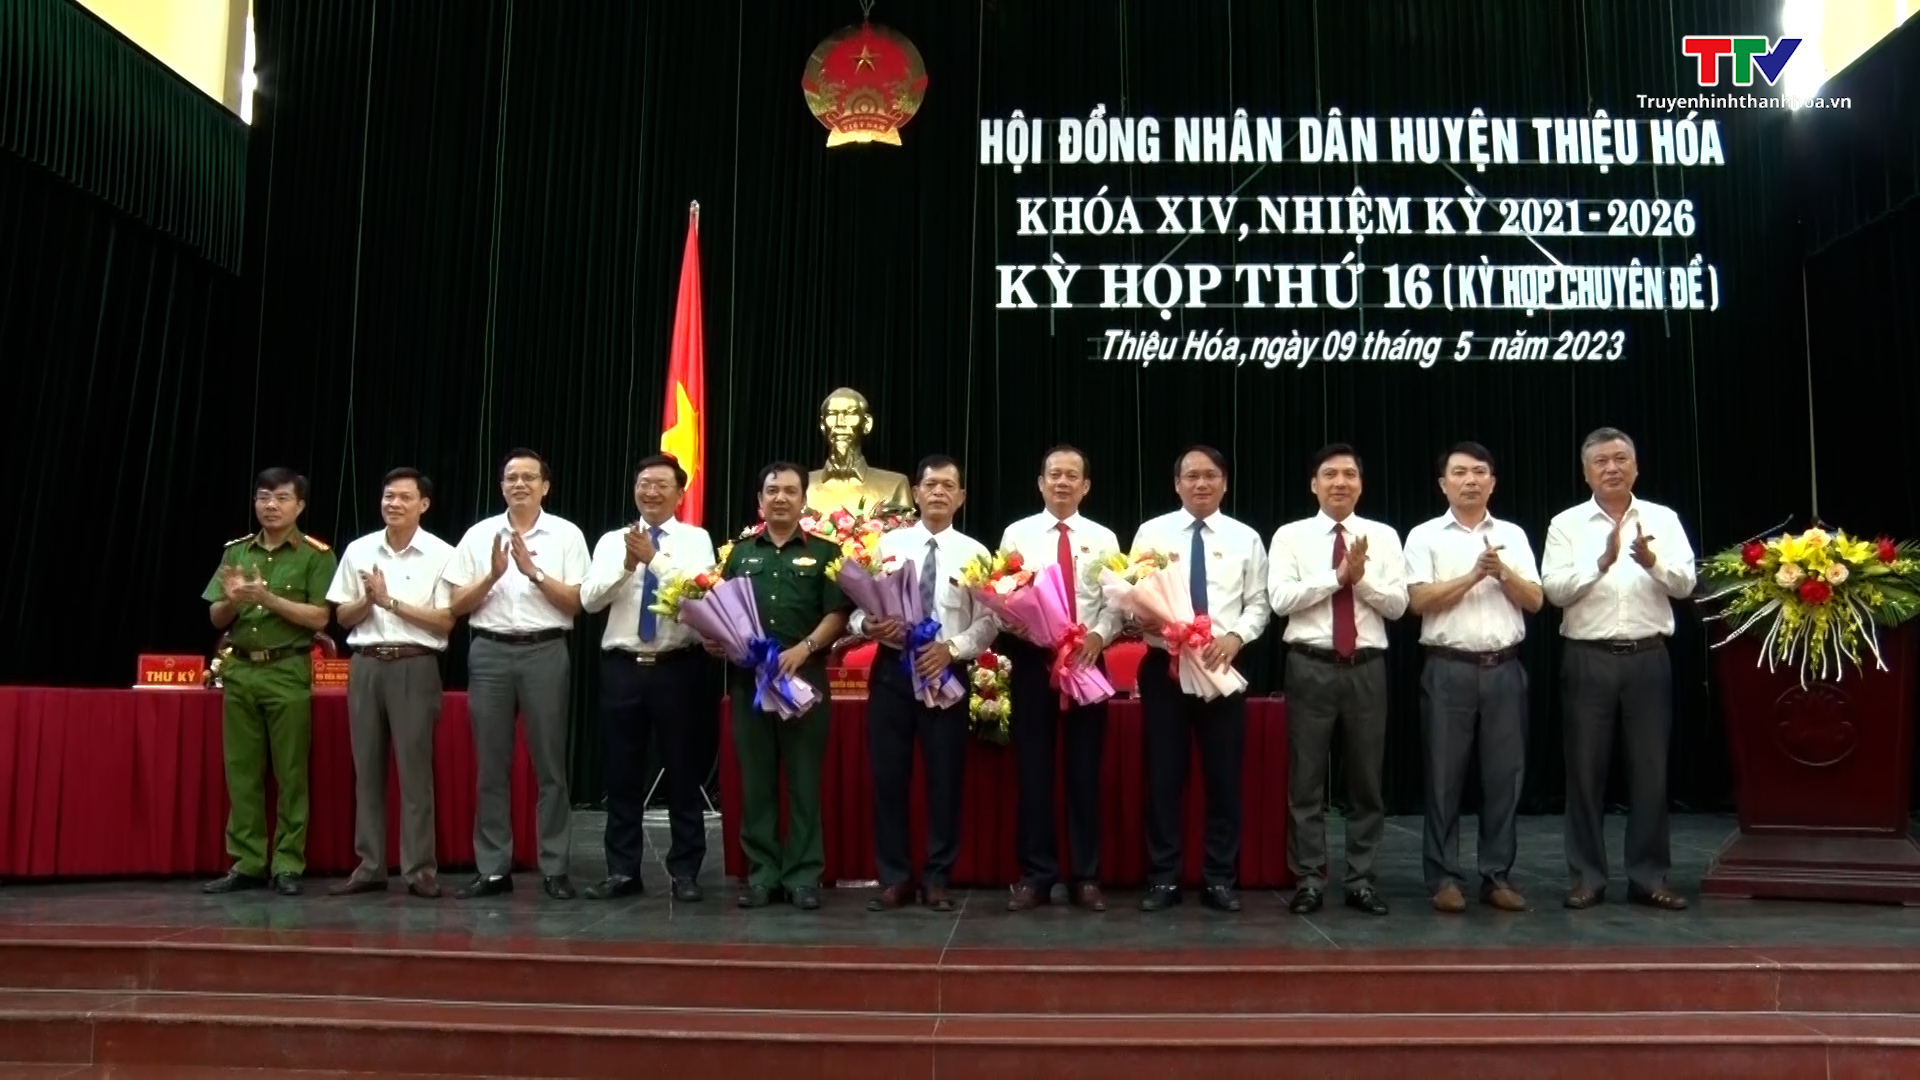 Hội đồng Nhân dân huyện Thiệu Hoá khoá XIV, nhiệm kỳ 2021 - 2026 tổ chức kỳ họp chuyên đề kiện toàn công tác cán bộ - Ảnh 2.